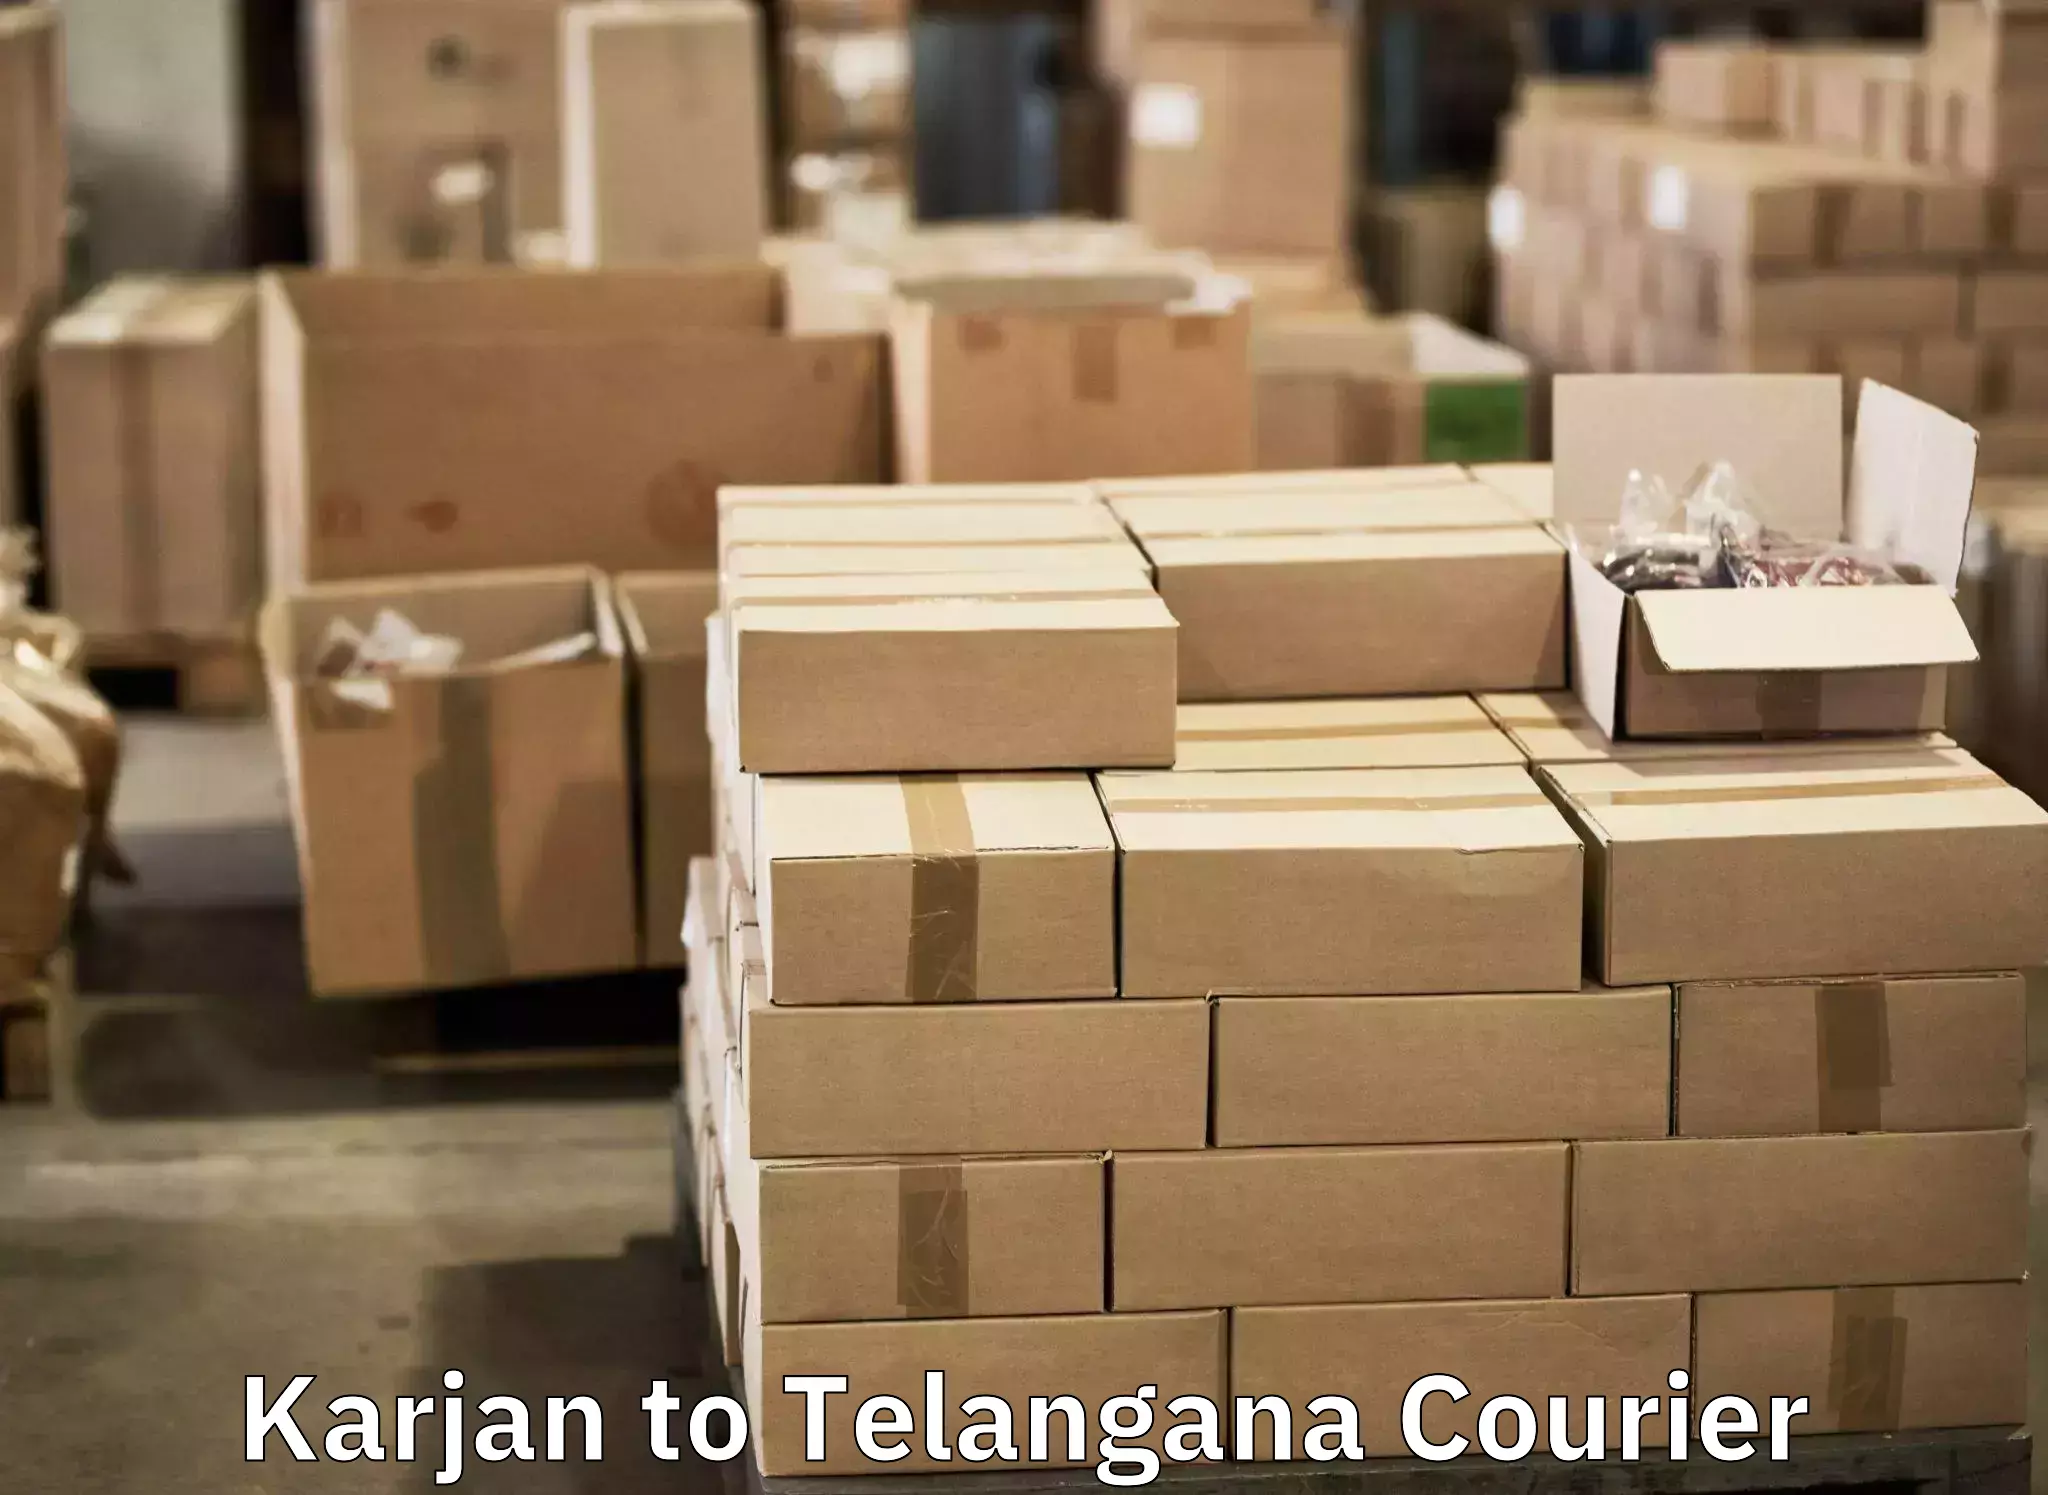 Baggage transport network Karjan to Warangal